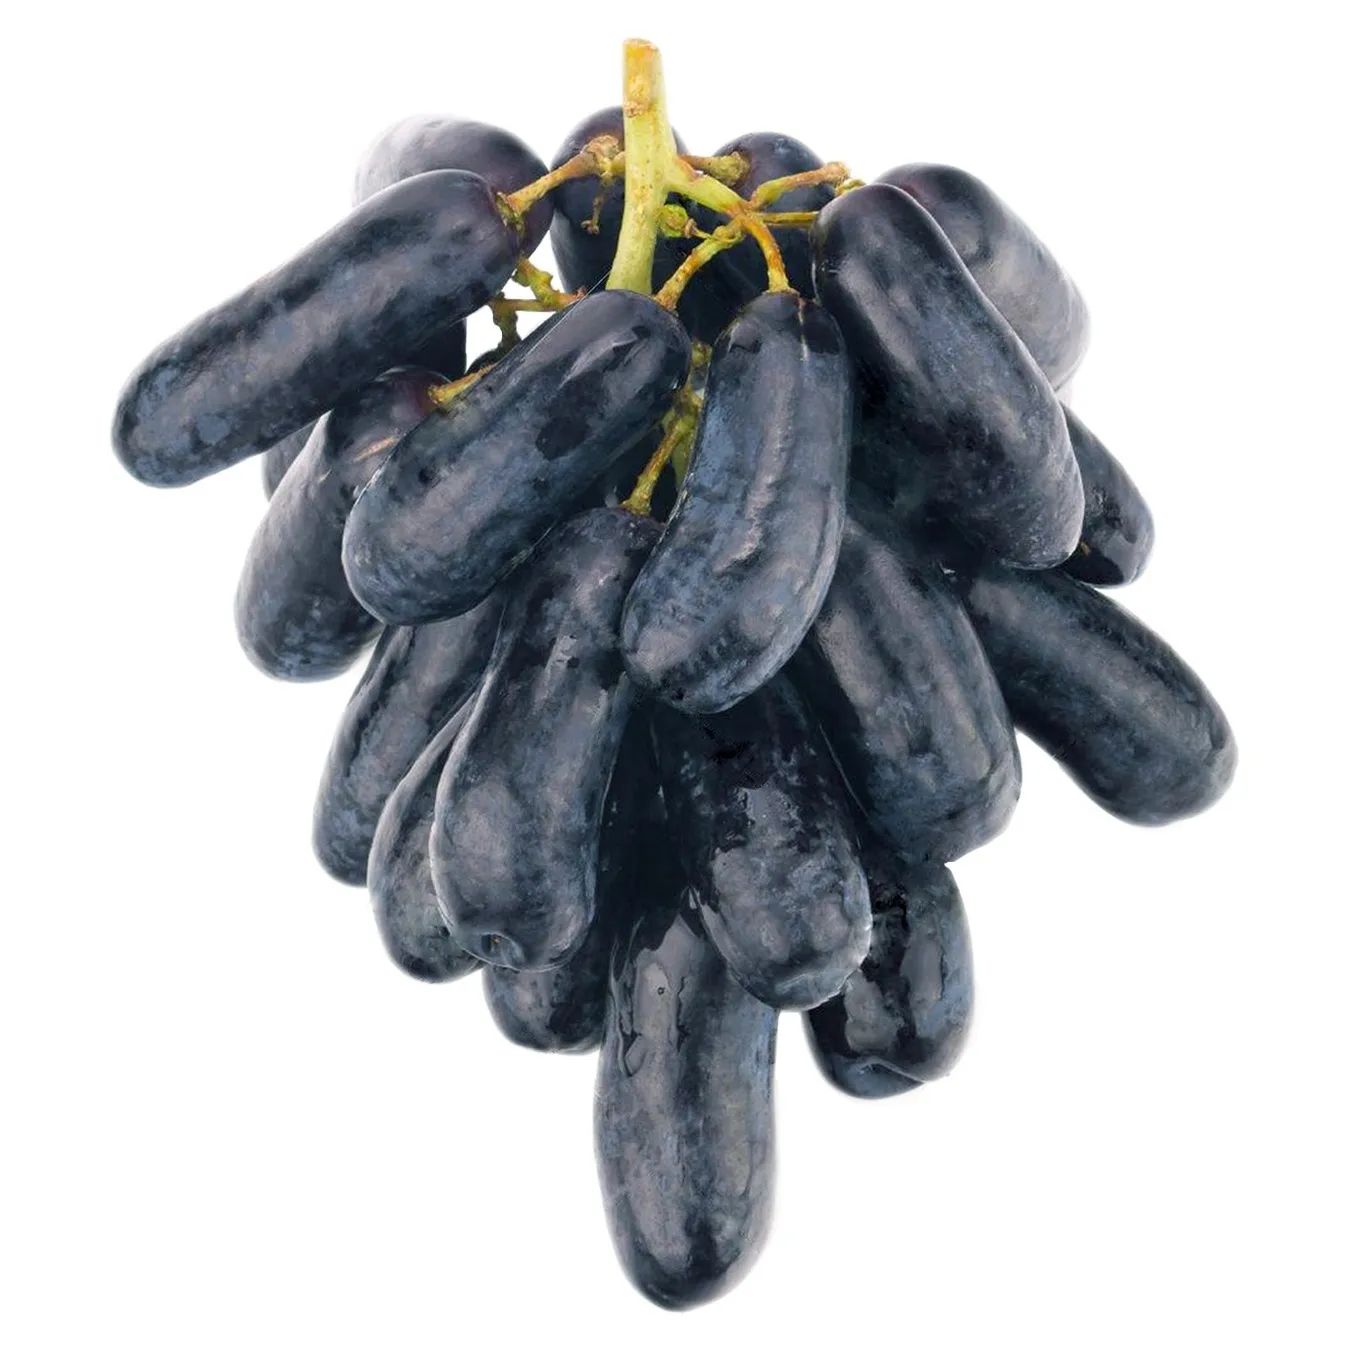 Виноград дамские пальчики фото черный